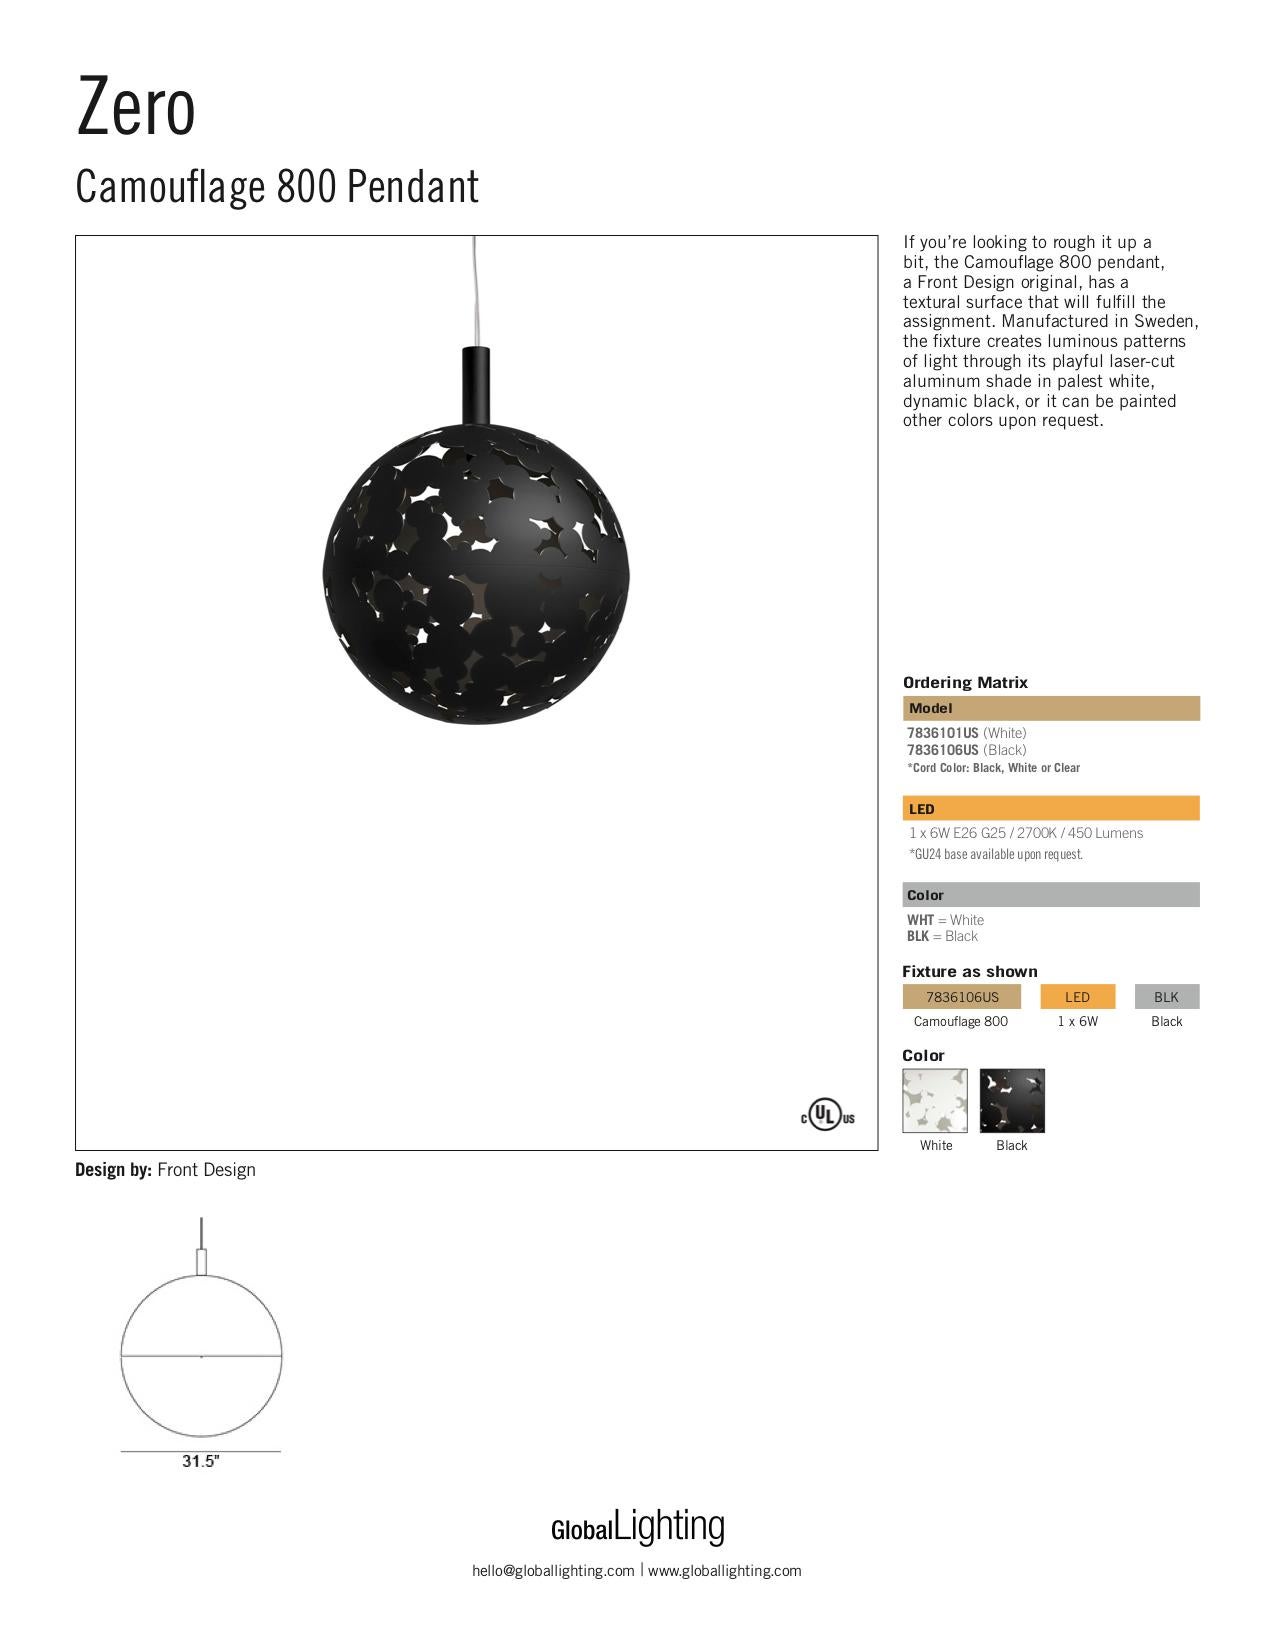 Zero Camouflage 800 Pendant in Black by Front Design (21. Jahrhundert und zeitgenössisch) im Angebot